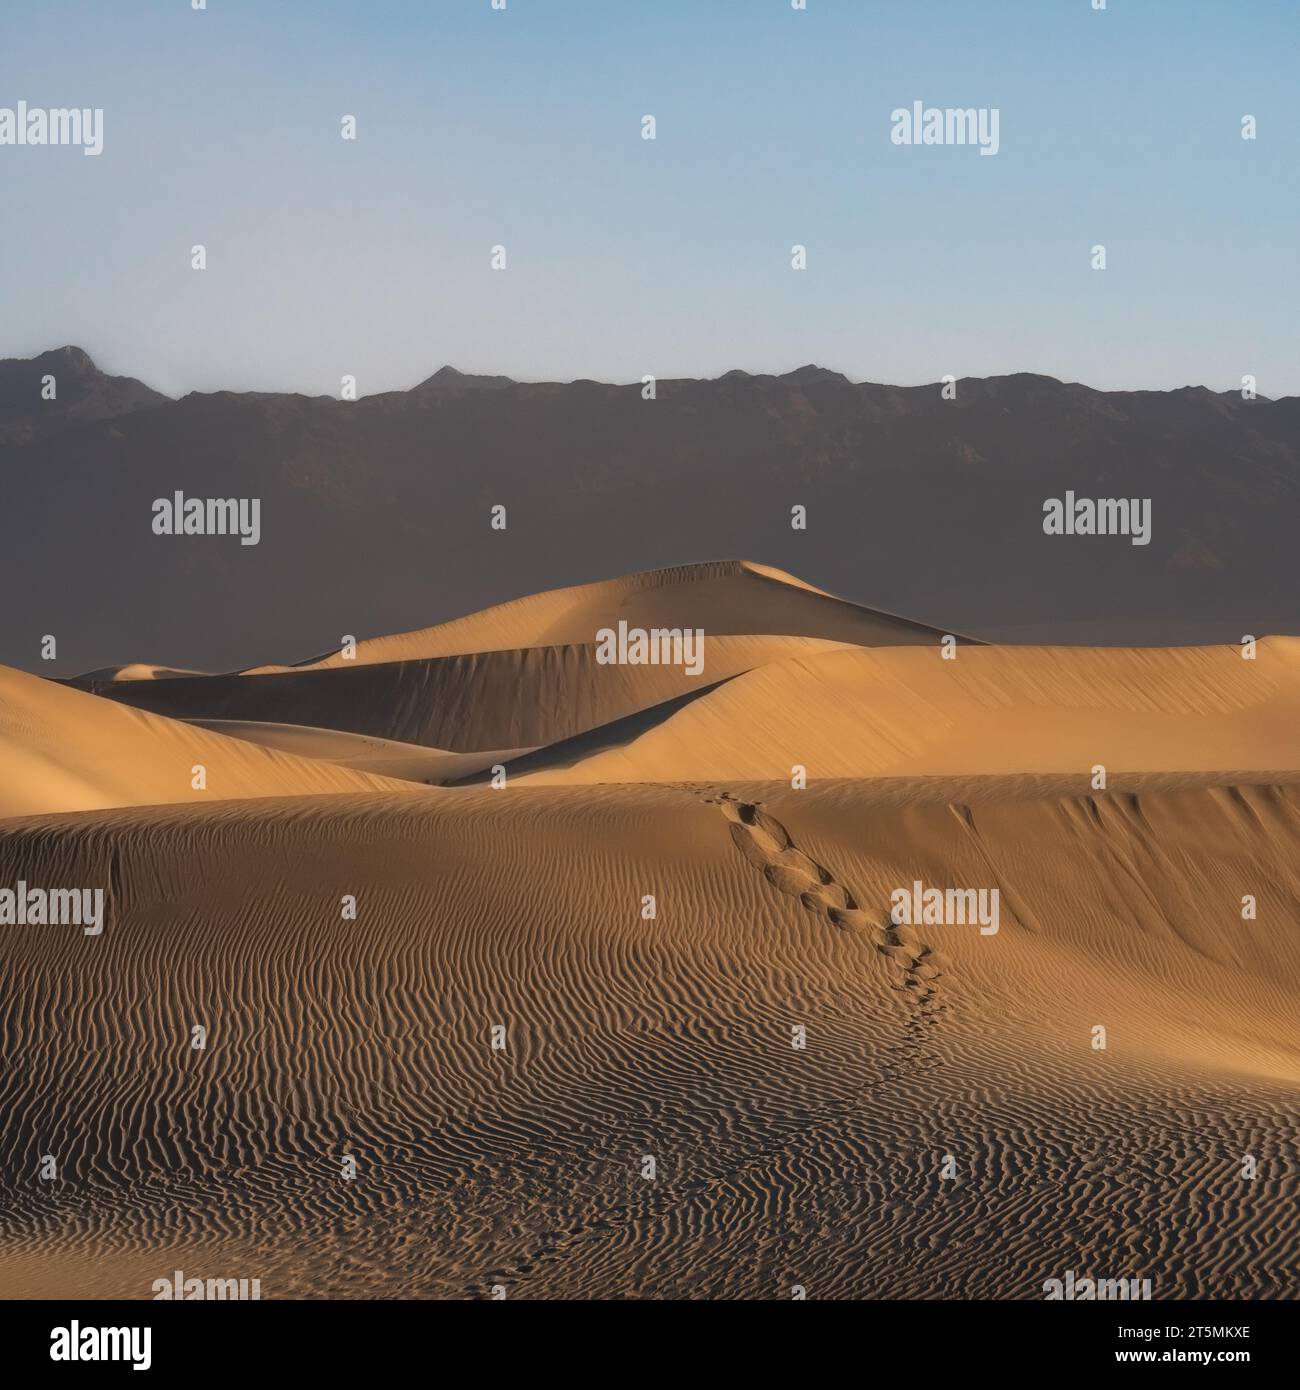 Death Valley, USA. Mesquite flacht am frühen Morgen Sanddünen ab. Fußtritte in den Sand, die zur Spitze der Düne führen. Klarer, trüber Himmel, Berge in der Ferne. Stockfoto